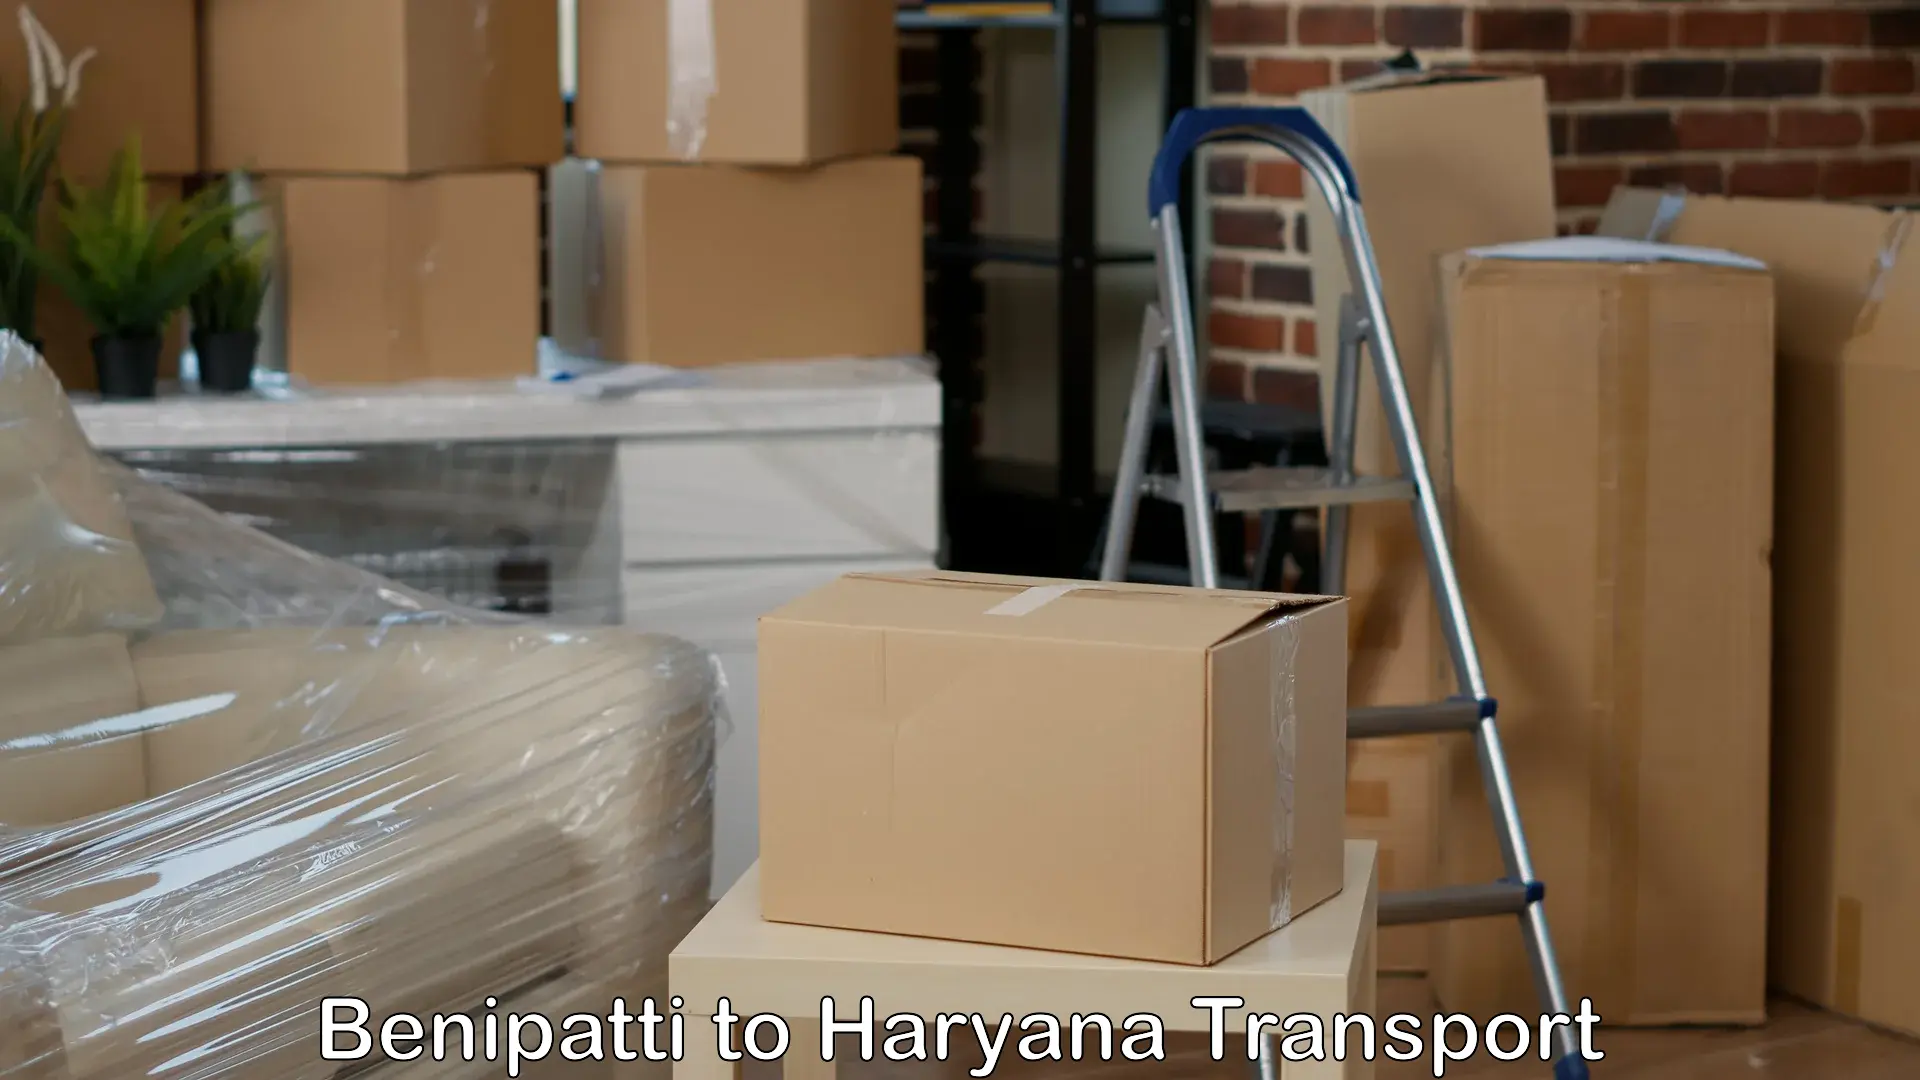 Delivery service Benipatti to Charkhari